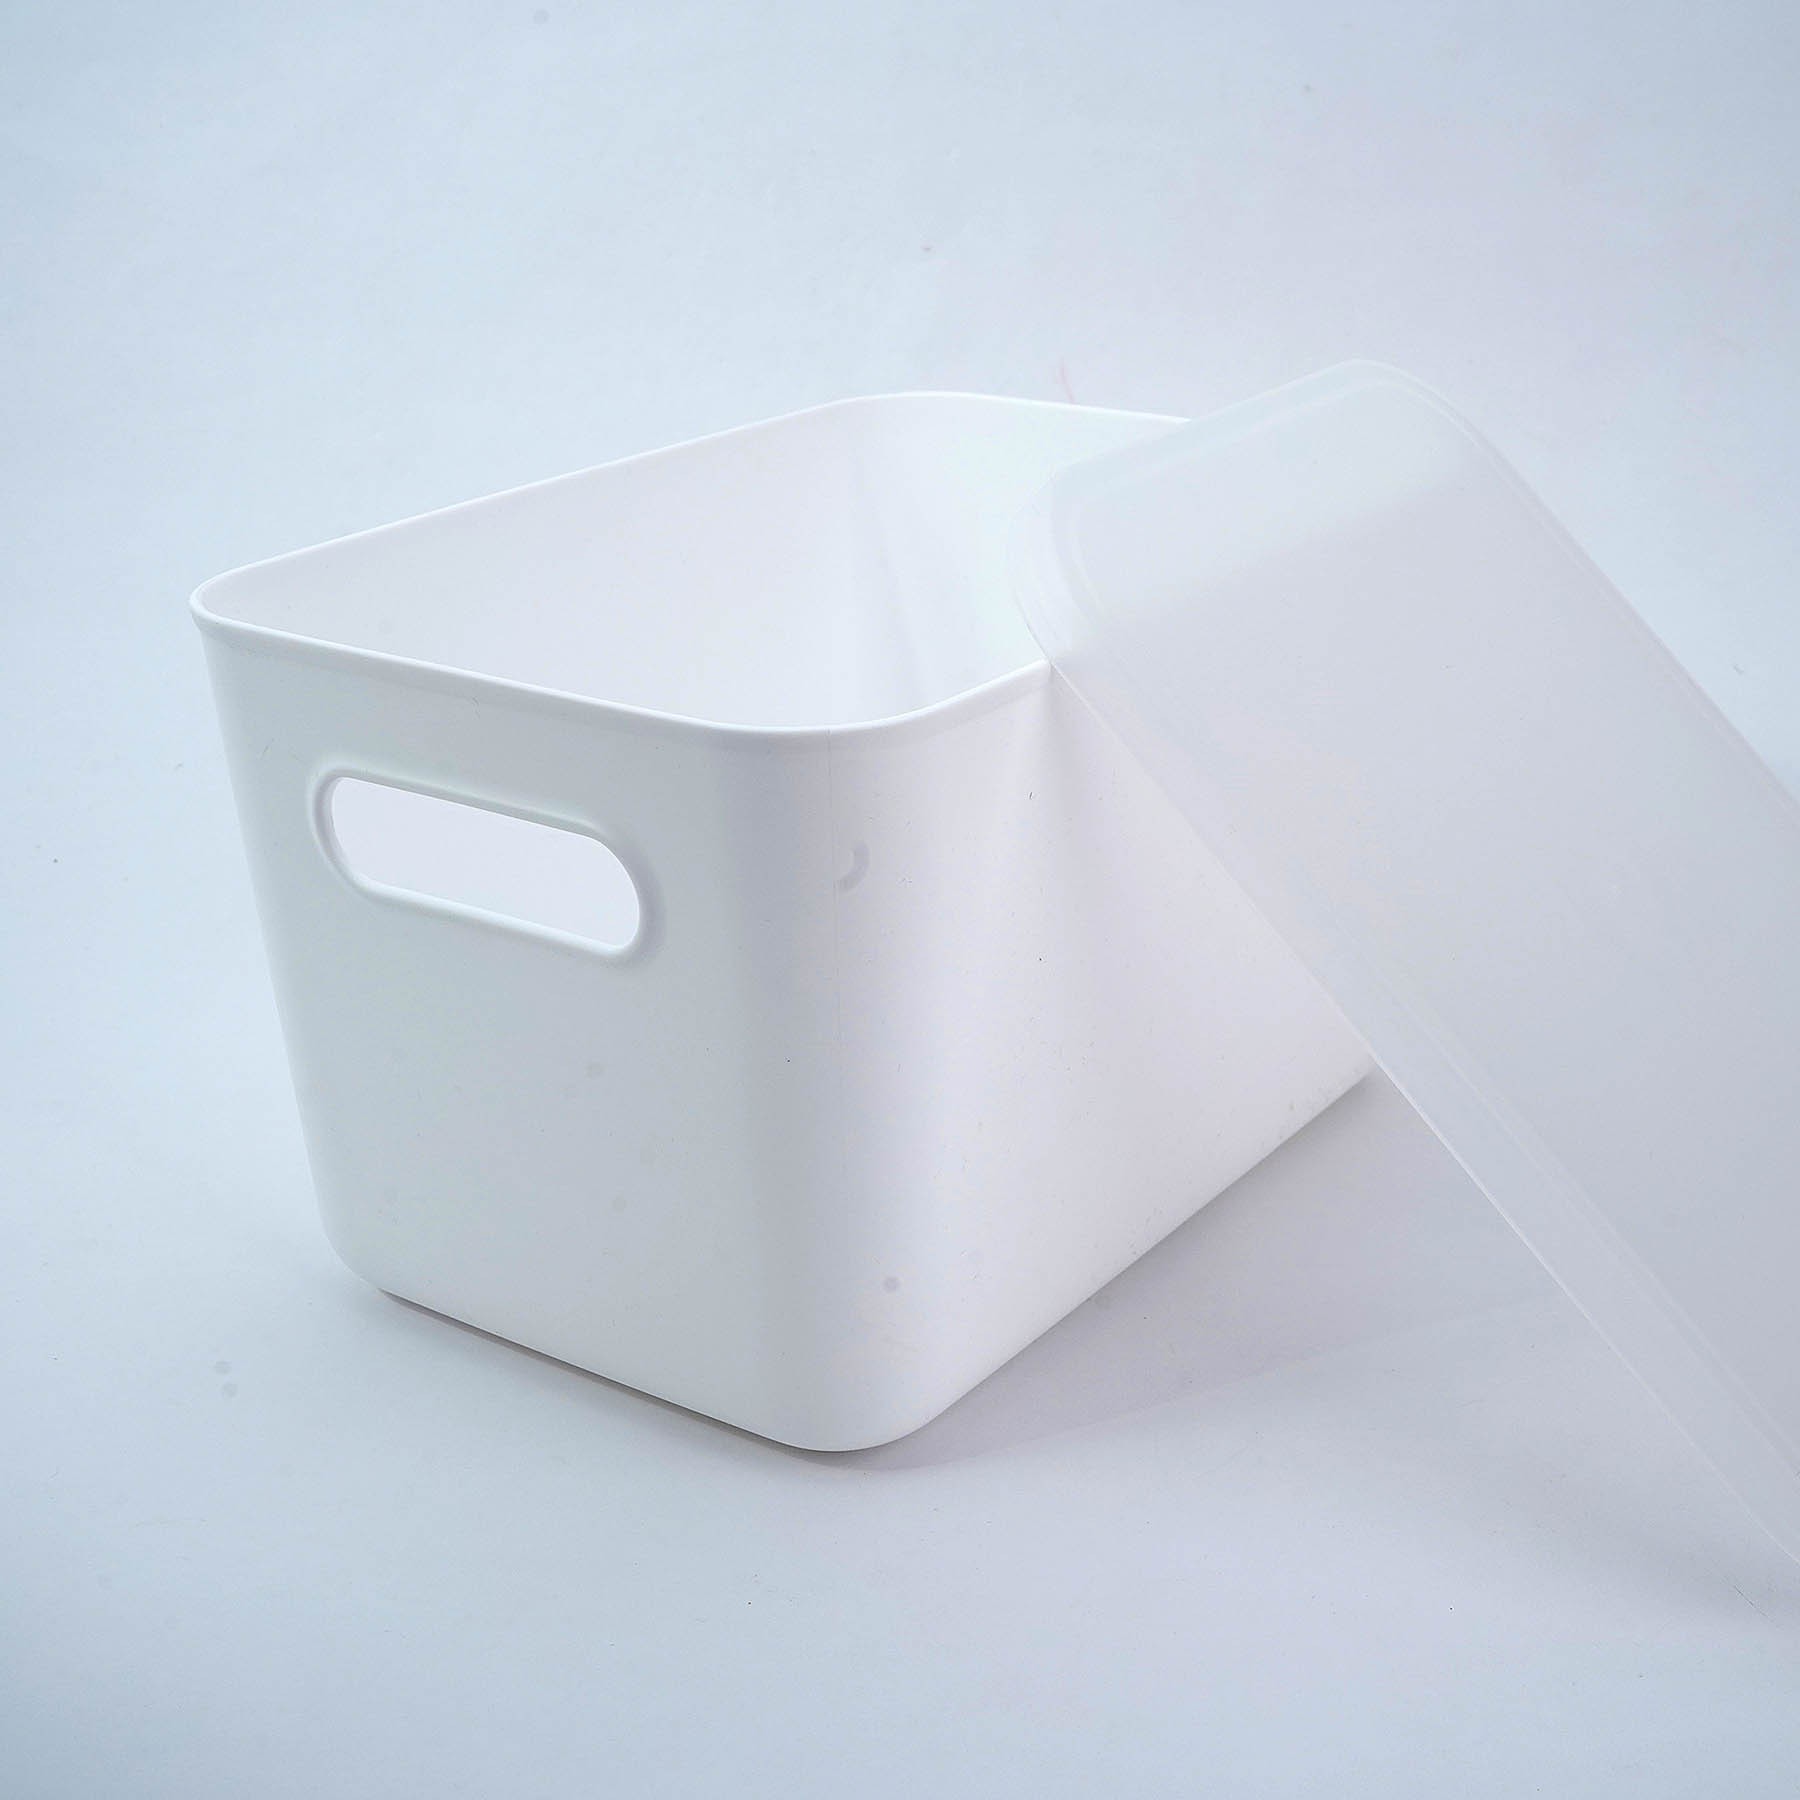 Handled Storage Box S - White